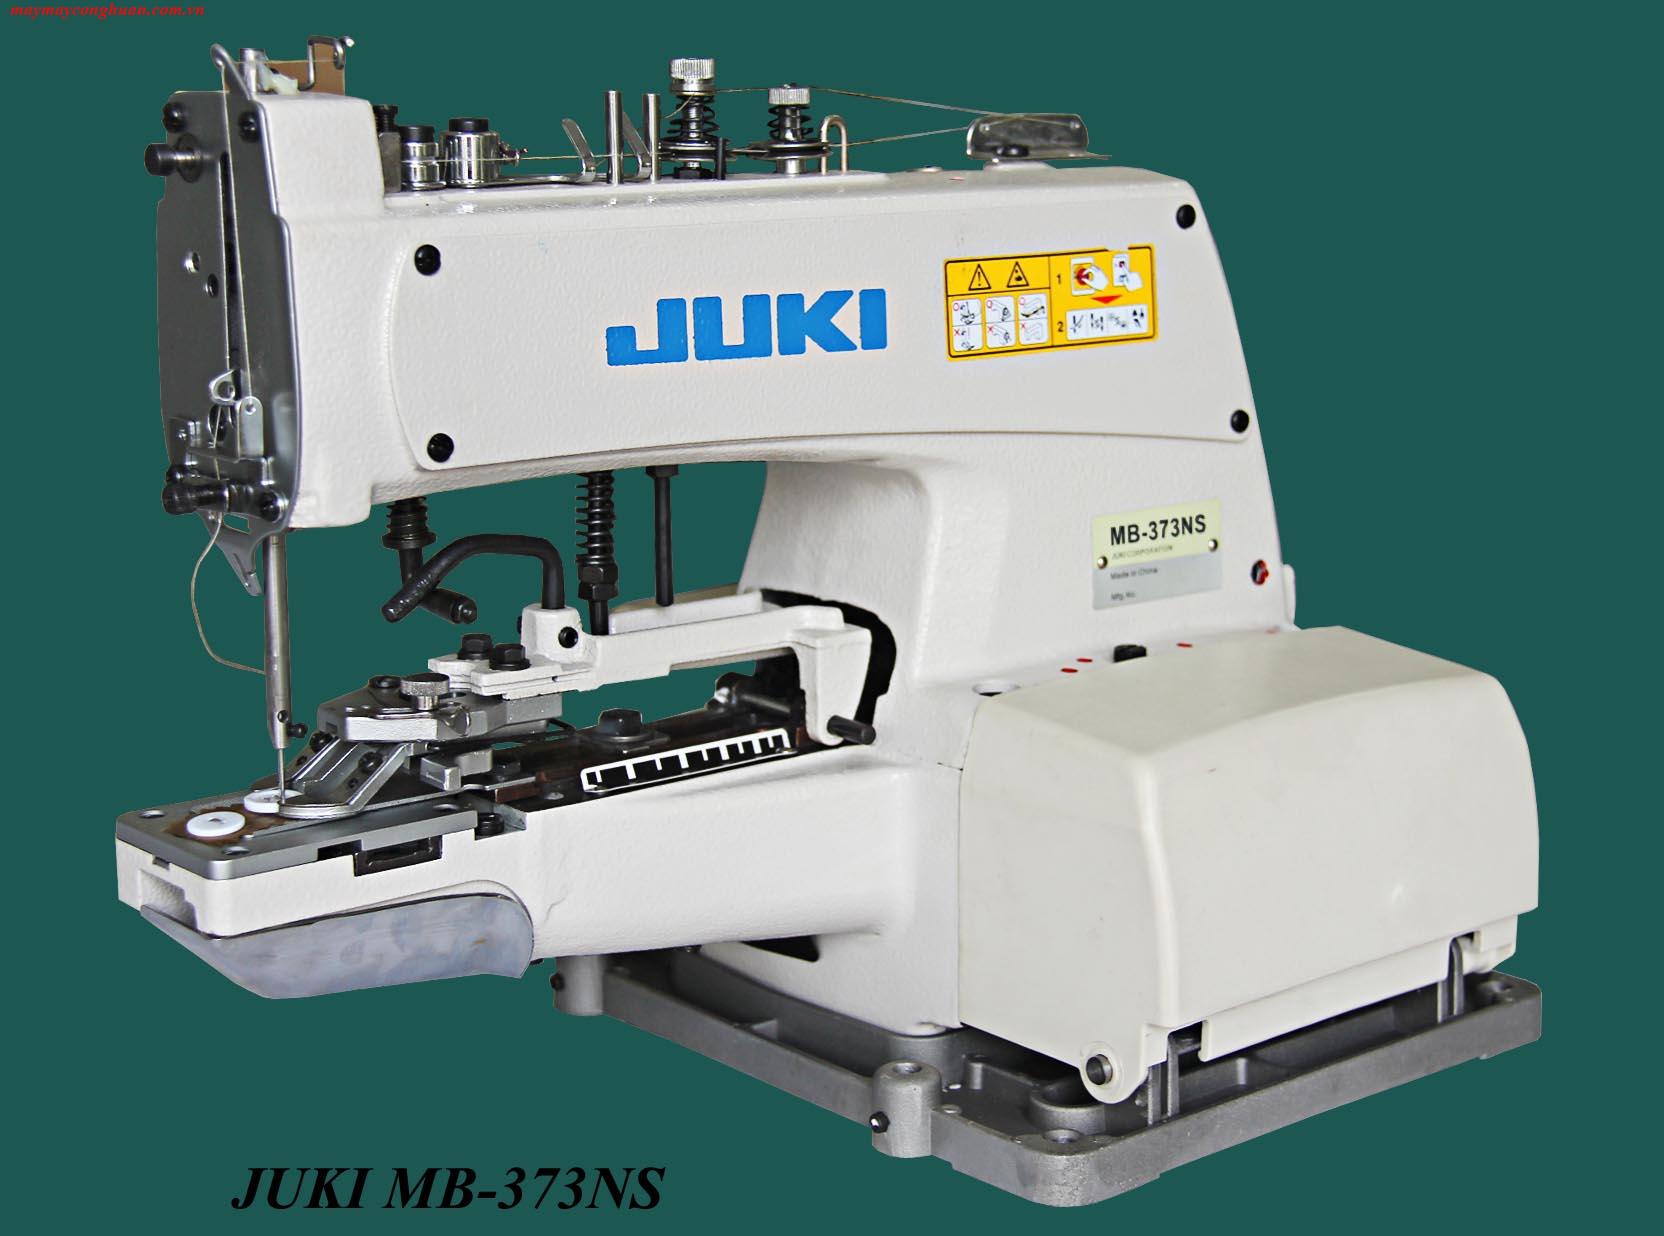 JUKI MB-373NS